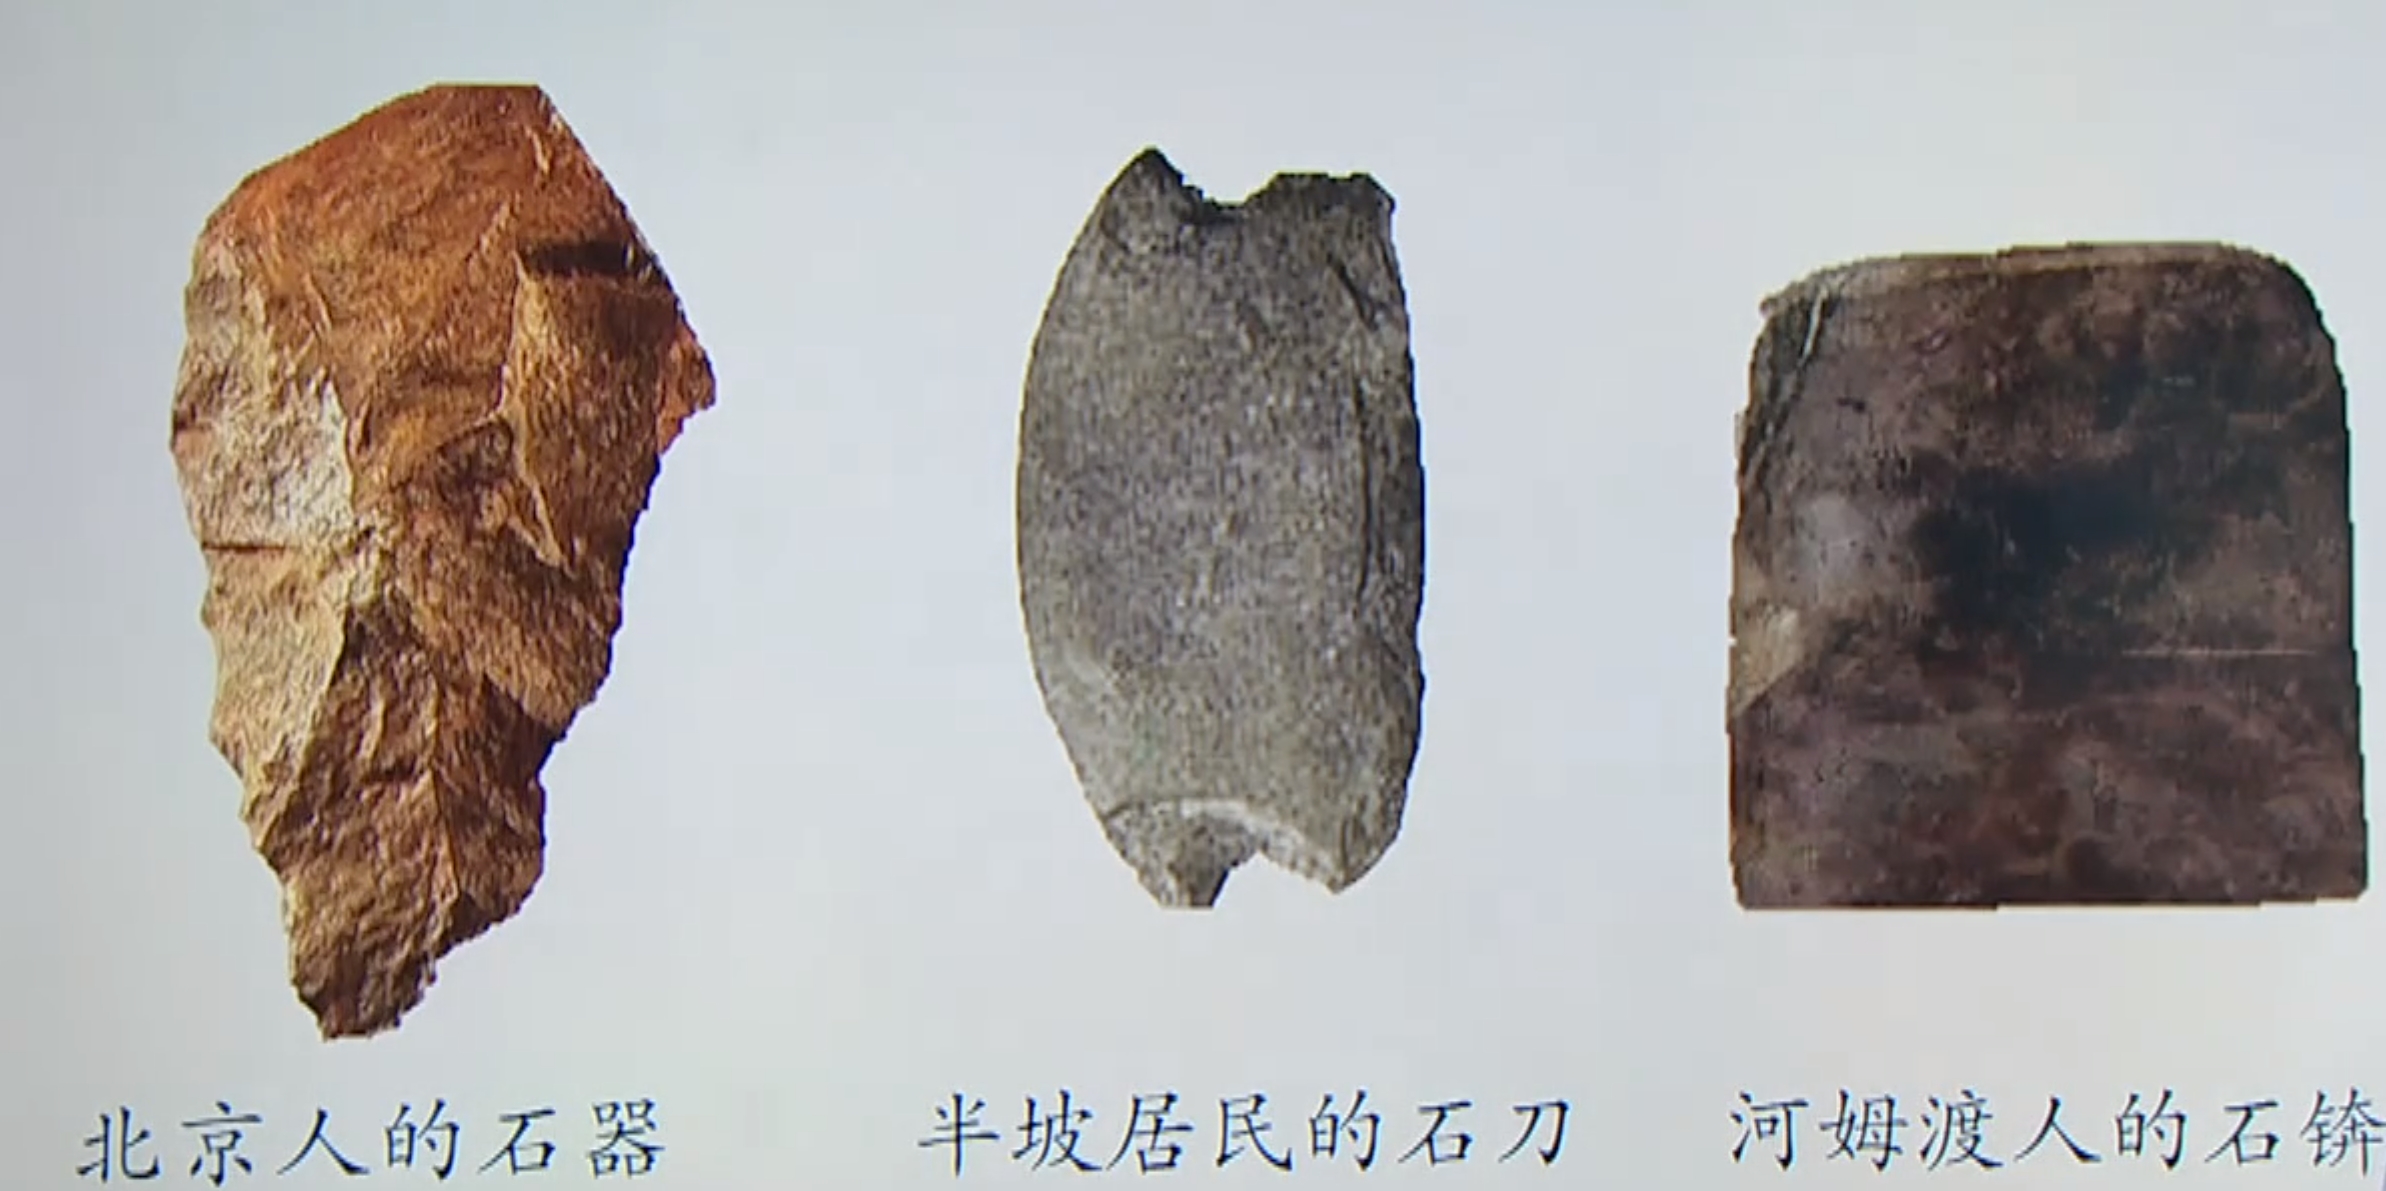 打制石器(左)磨制石器(中,右)